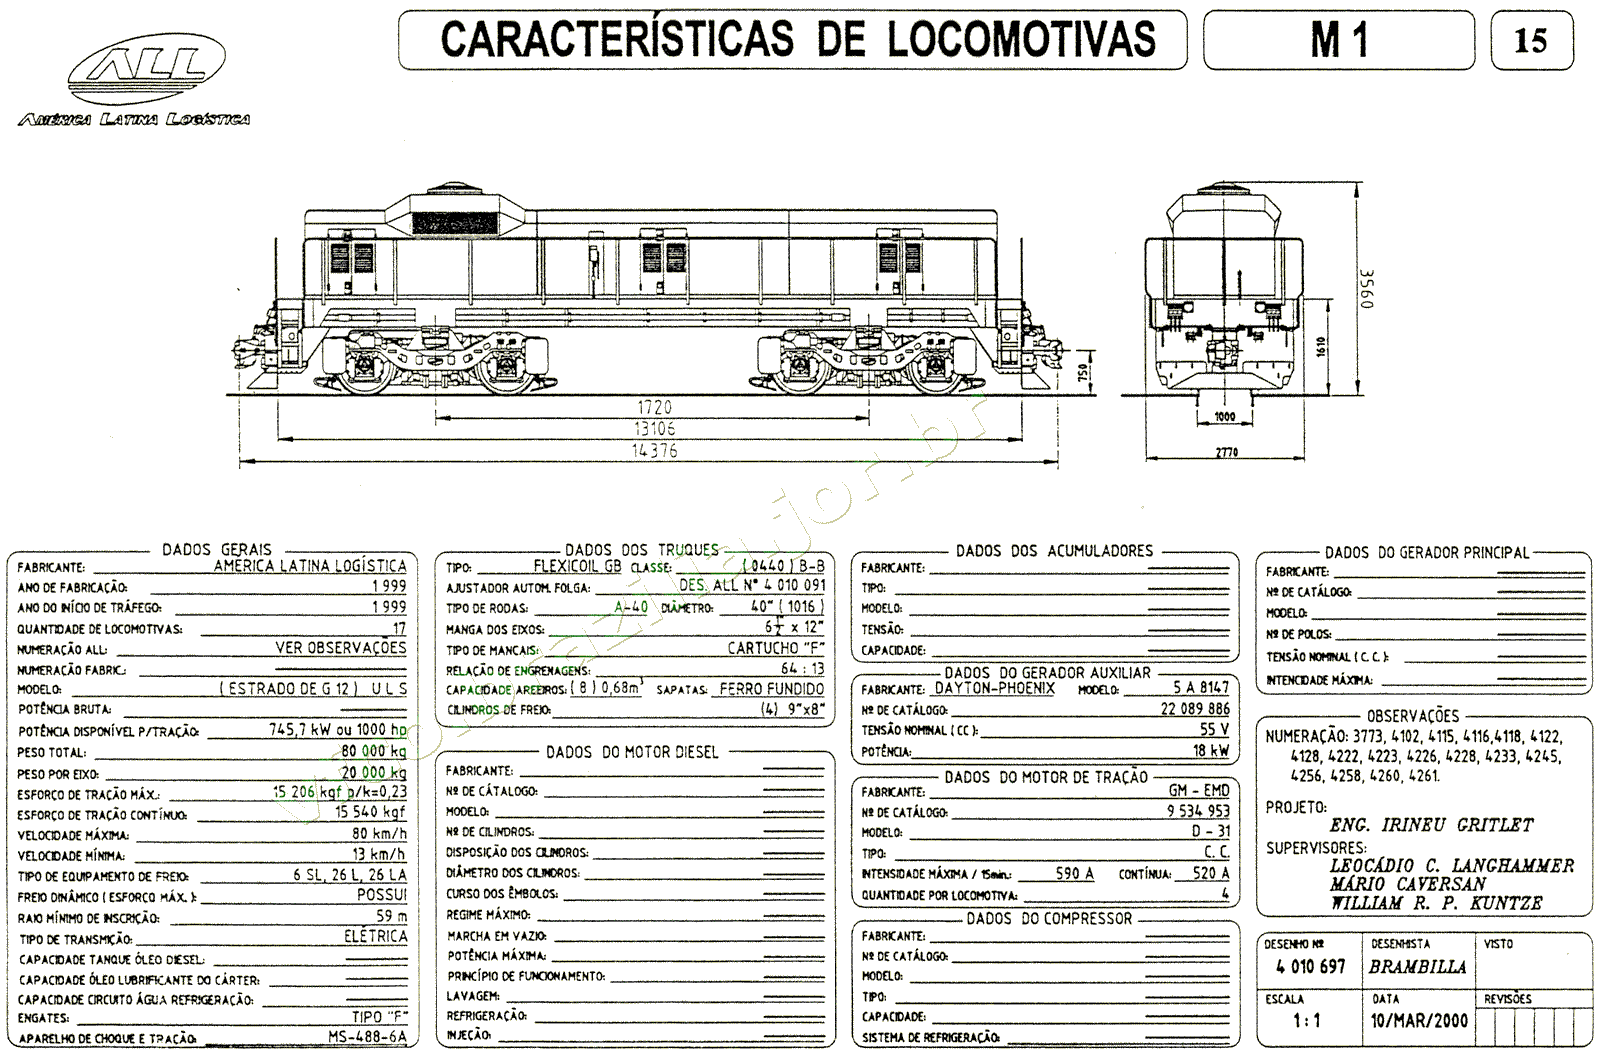 Planta e especificações da Locomotiva "slug" M1 da ferrovia ALL